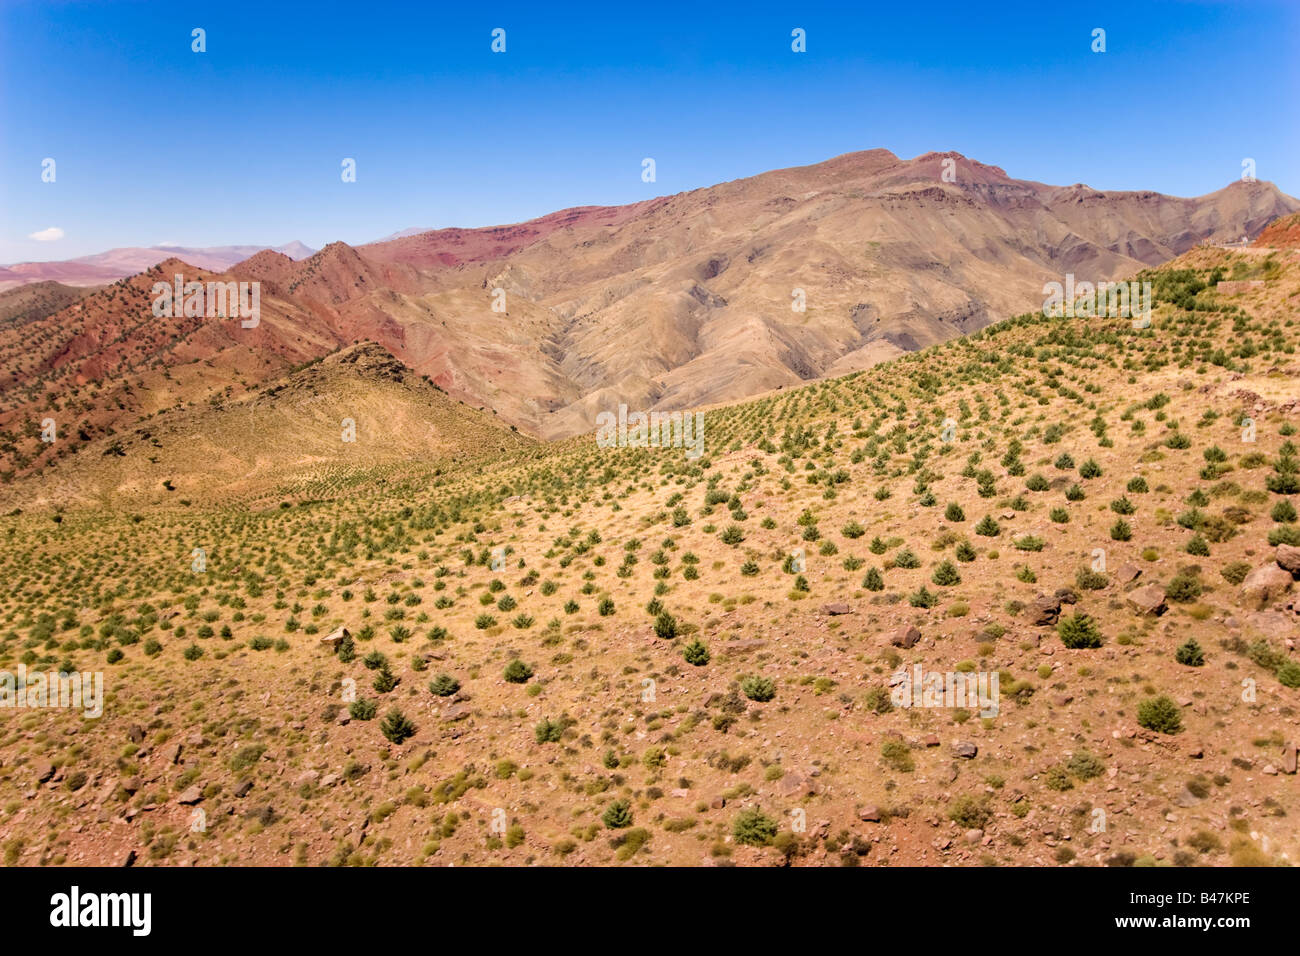 Dades valle selvaggia in Marocco Foto Stock